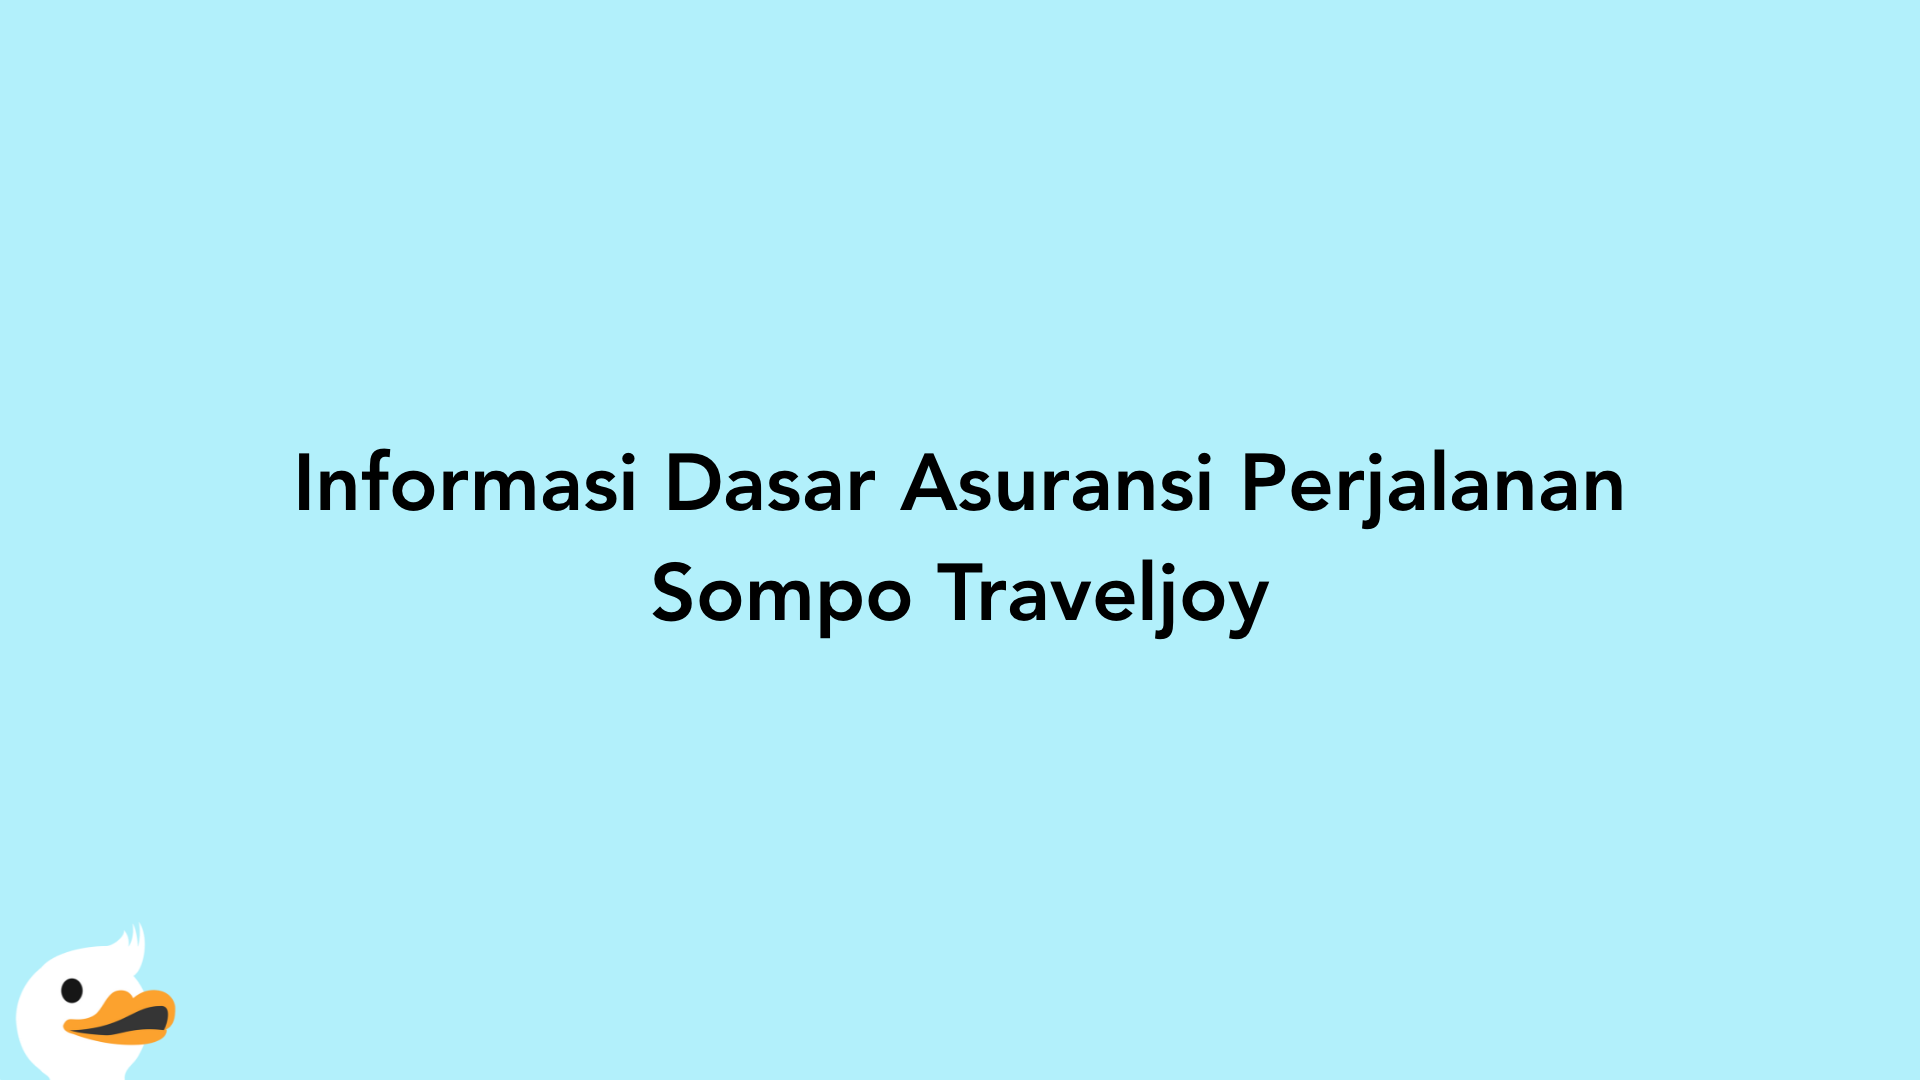 Informasi Dasar Asuransi Perjalanan Sompo Traveljoy